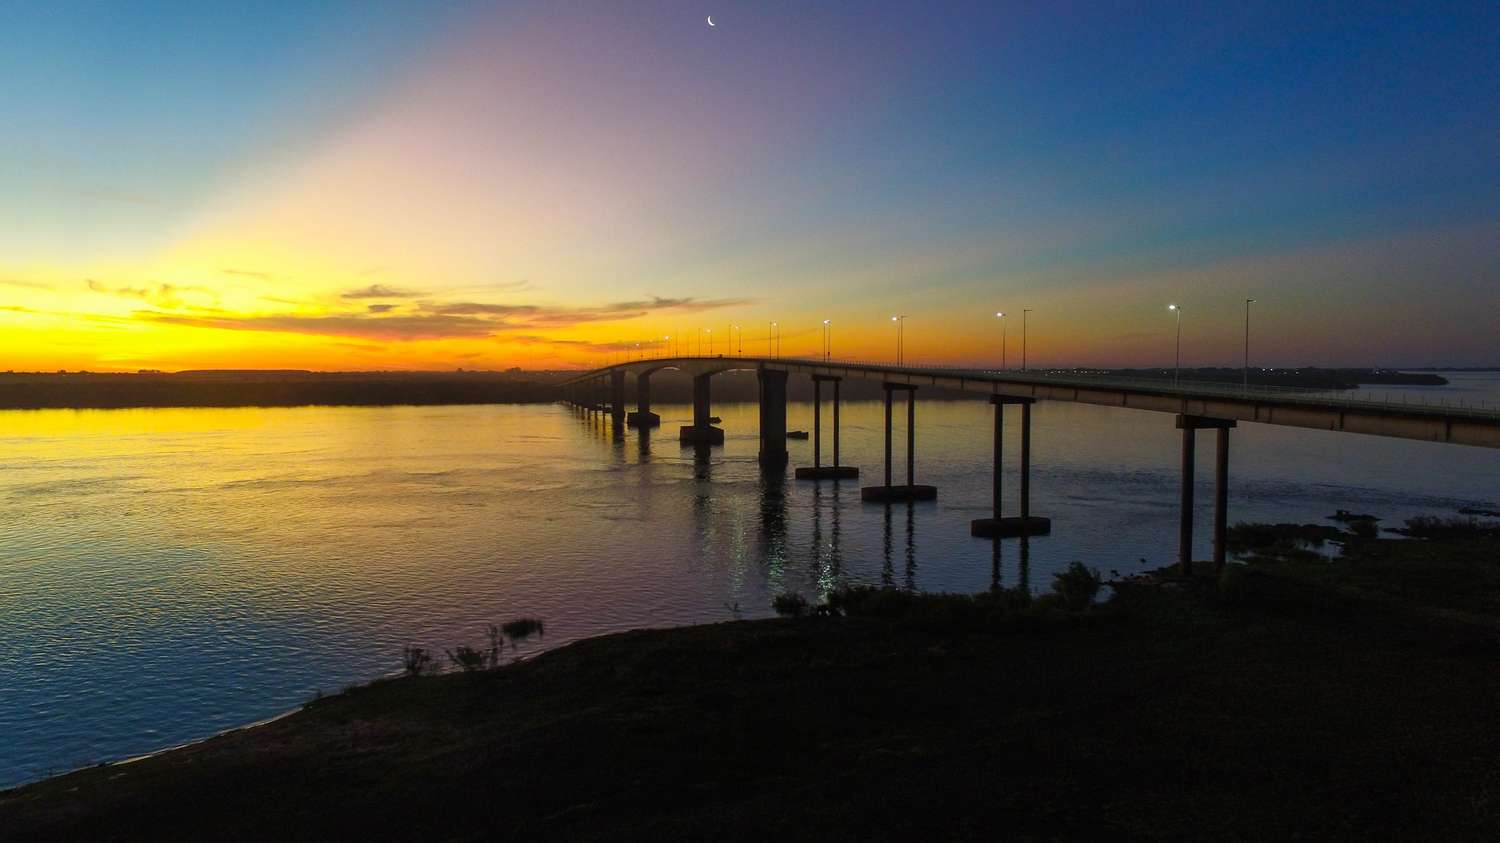 Adecuación de tarifas: ¿Cuánto saldrá desde el lunes cruzar a Uruguay por los puentes Internacionales?